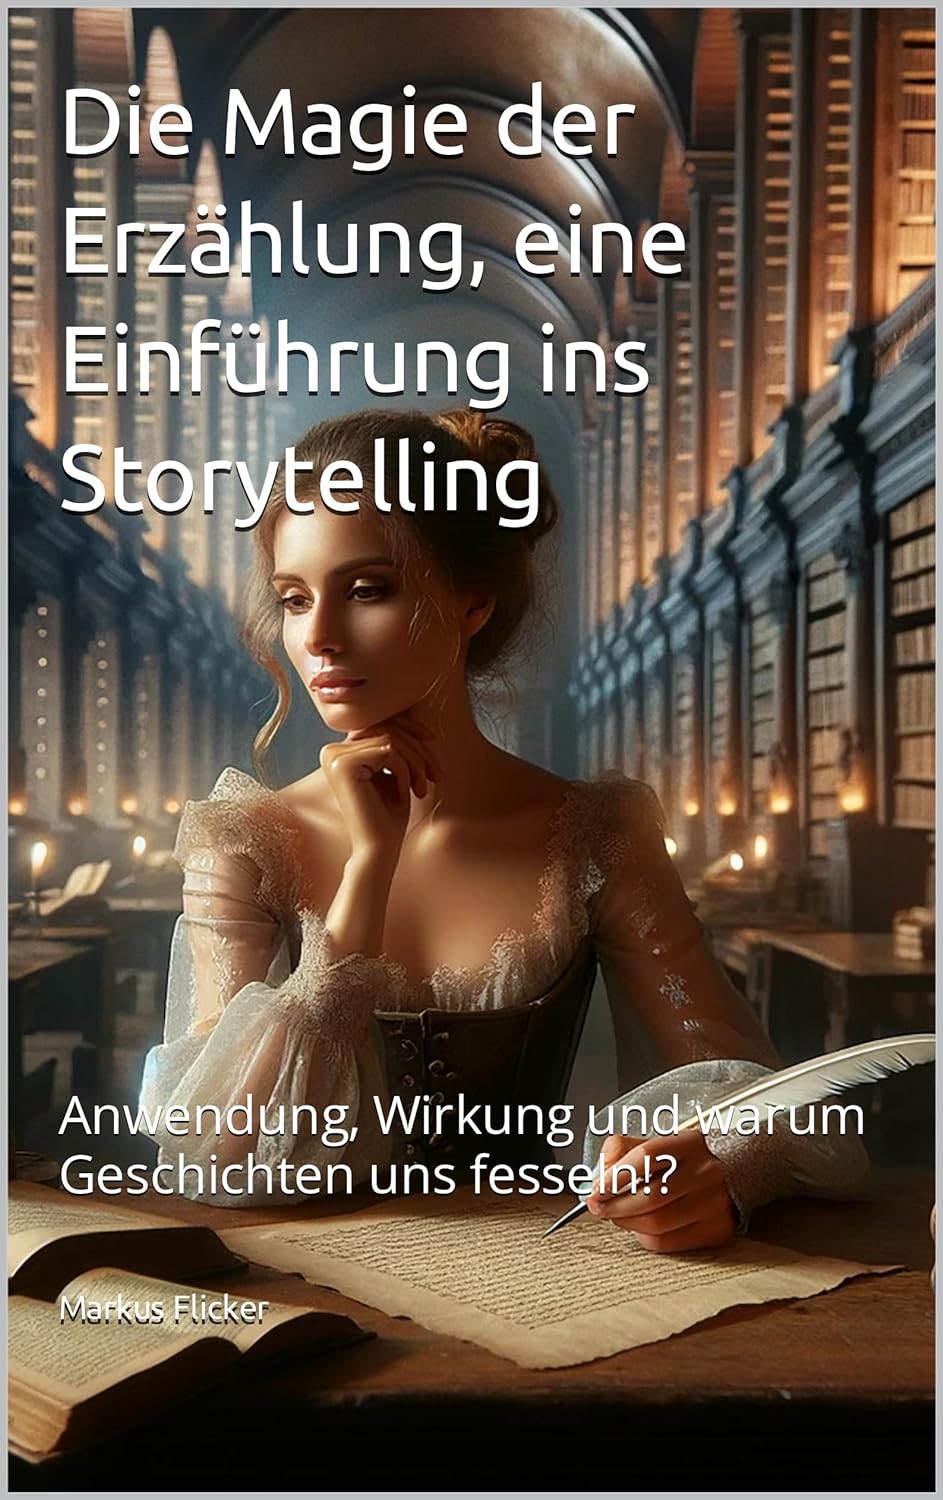 Die Magie der Erzählung, eine Einführung ins Storytelling. Anwendung, Wirkung und warum Geschichten uns fesseln. Buch von Markus Flicker